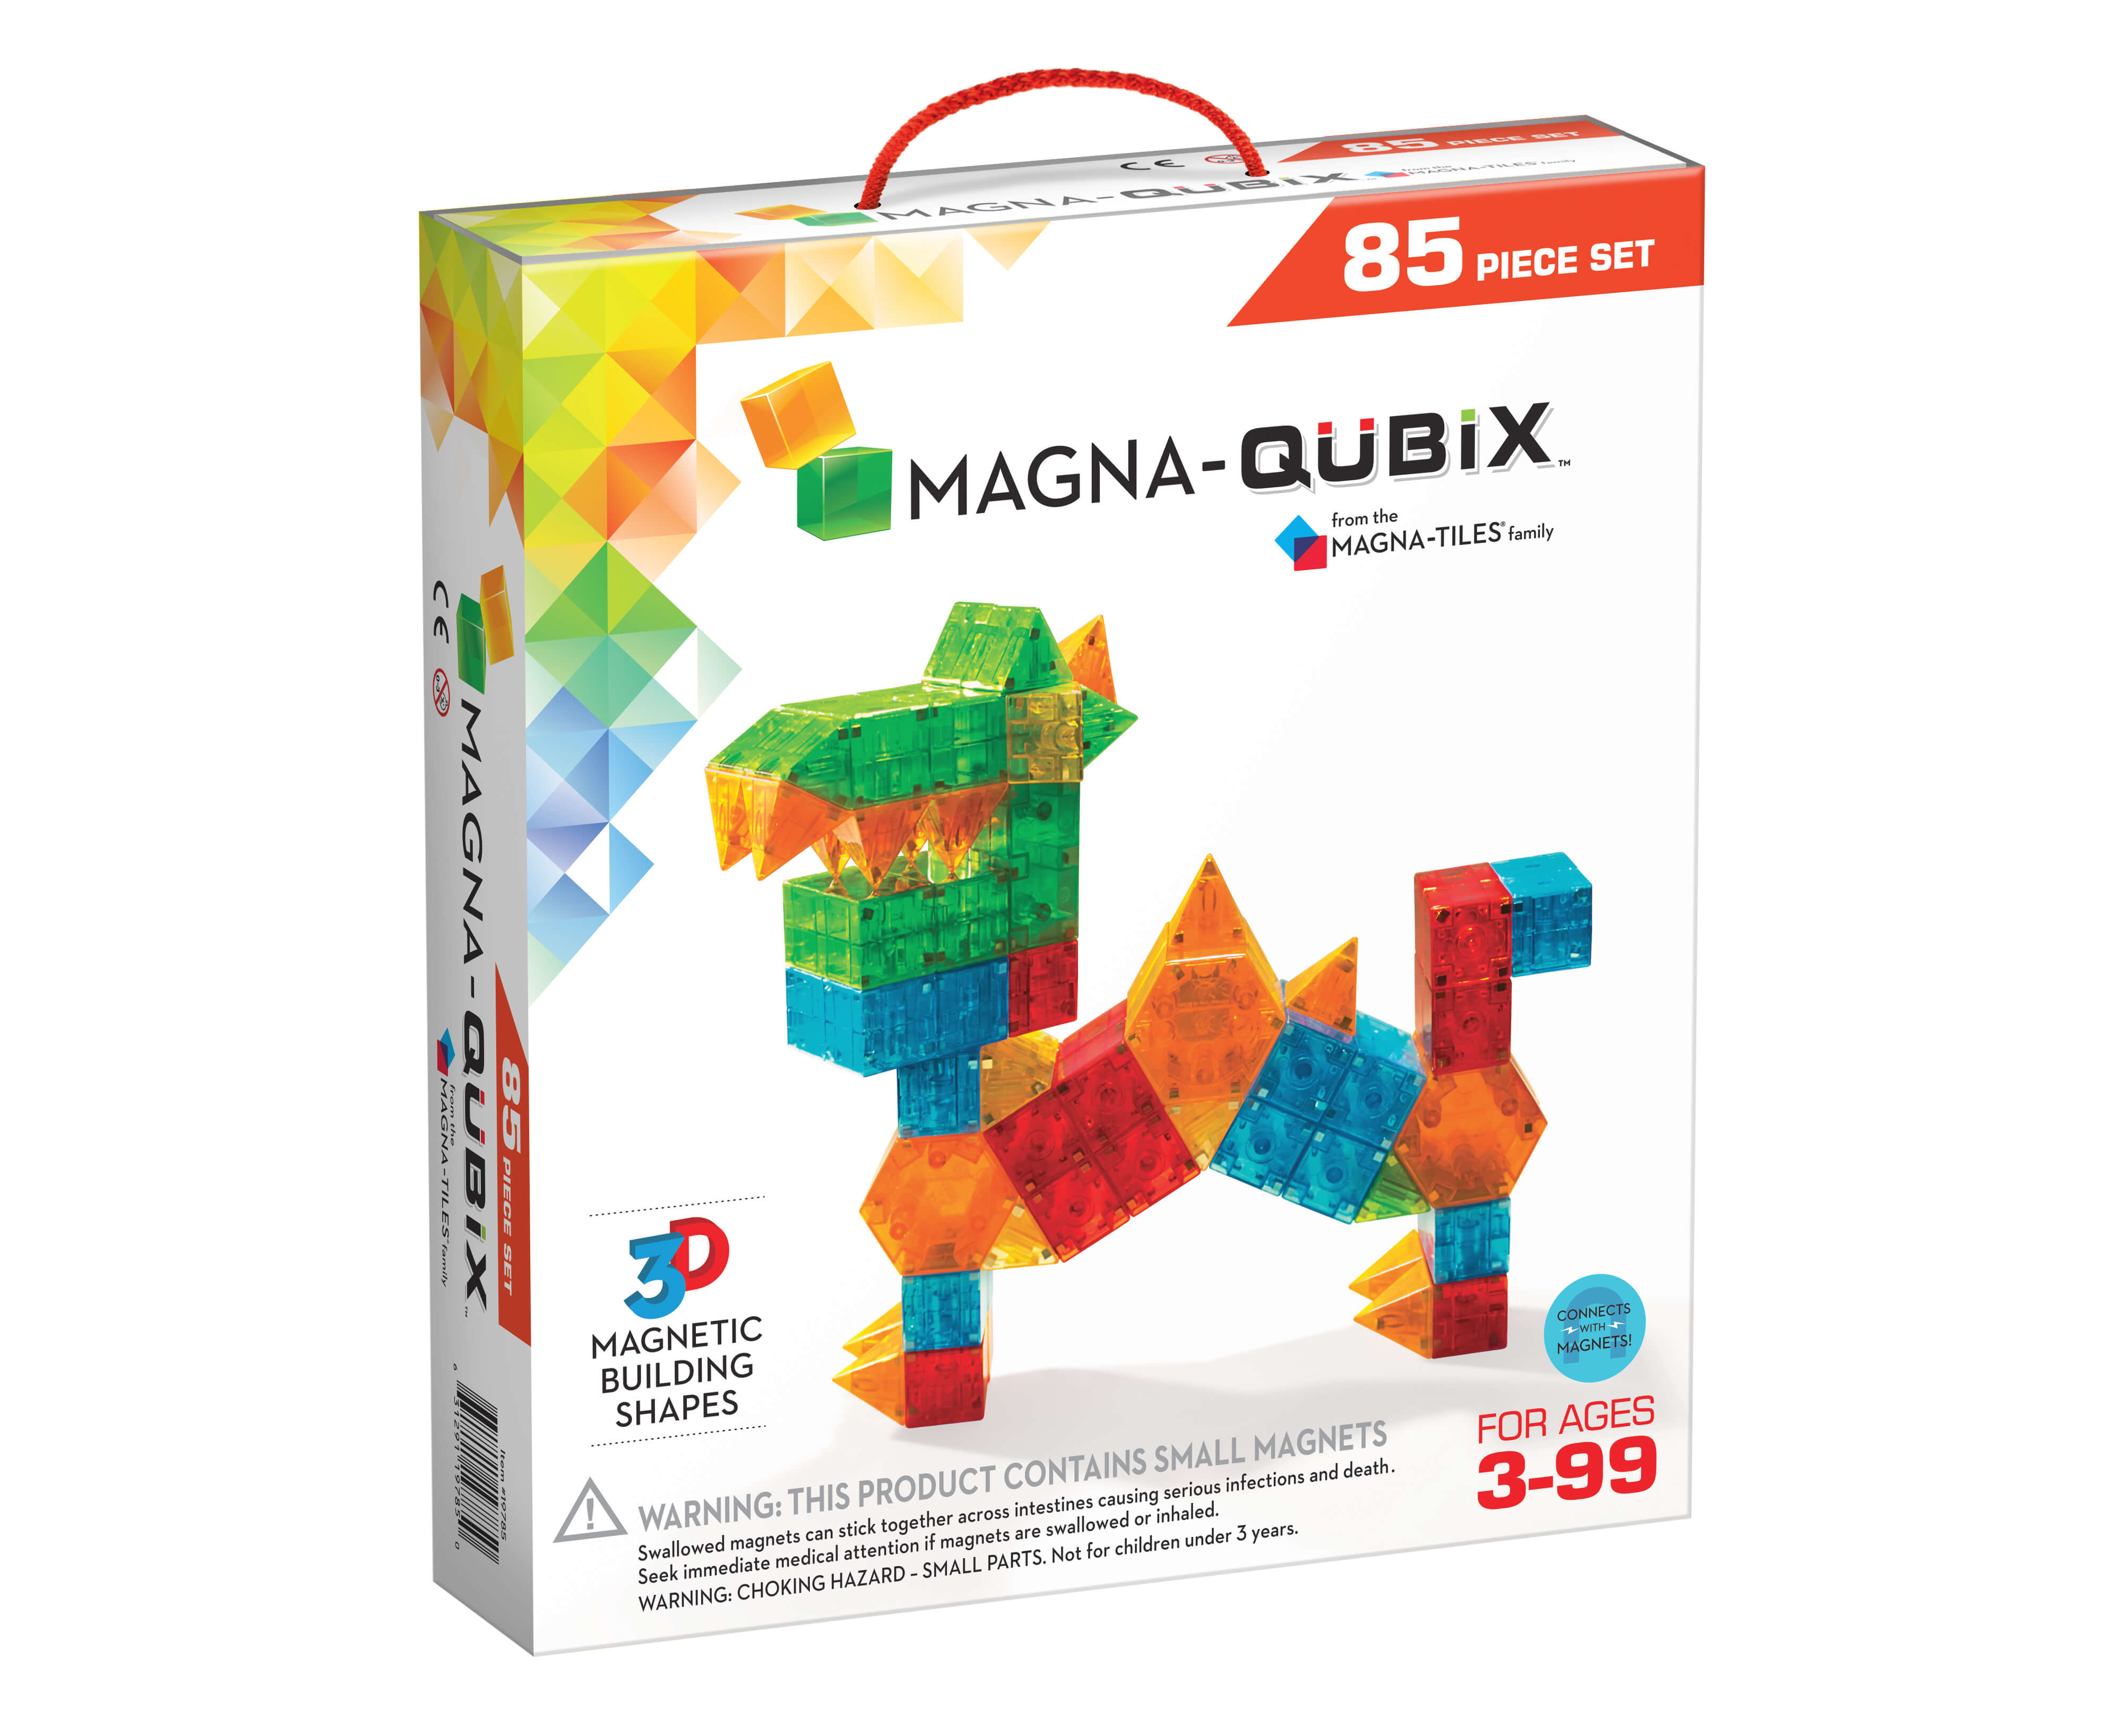 Magna-Qubix 85 box front